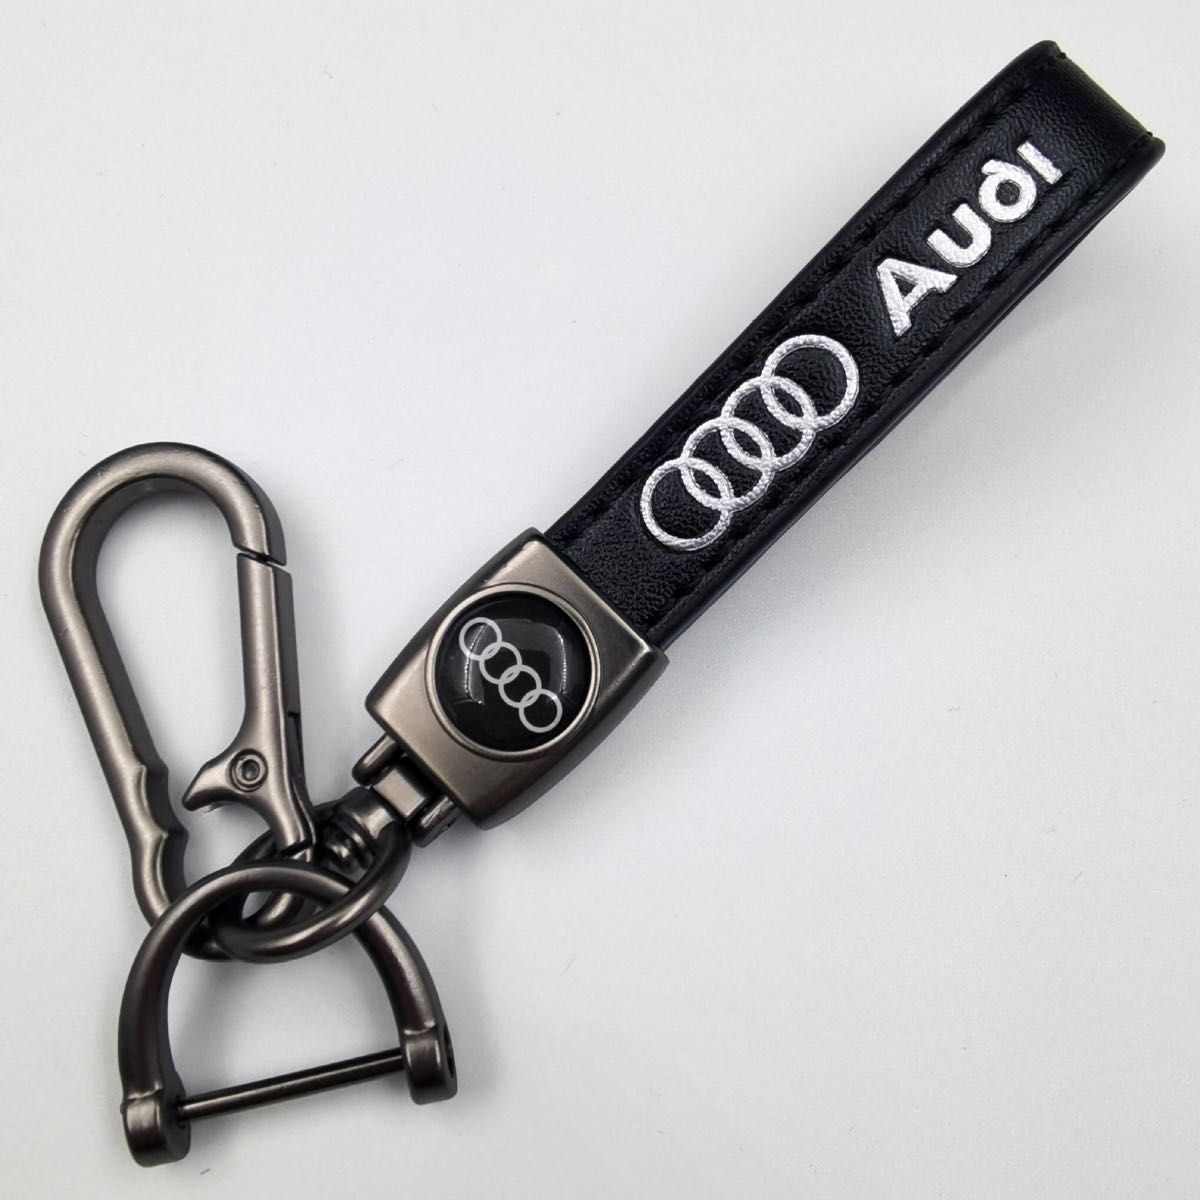 アウディ Audi キーホルダー キーホル ダー 車ロゴキーチェーン キーリング